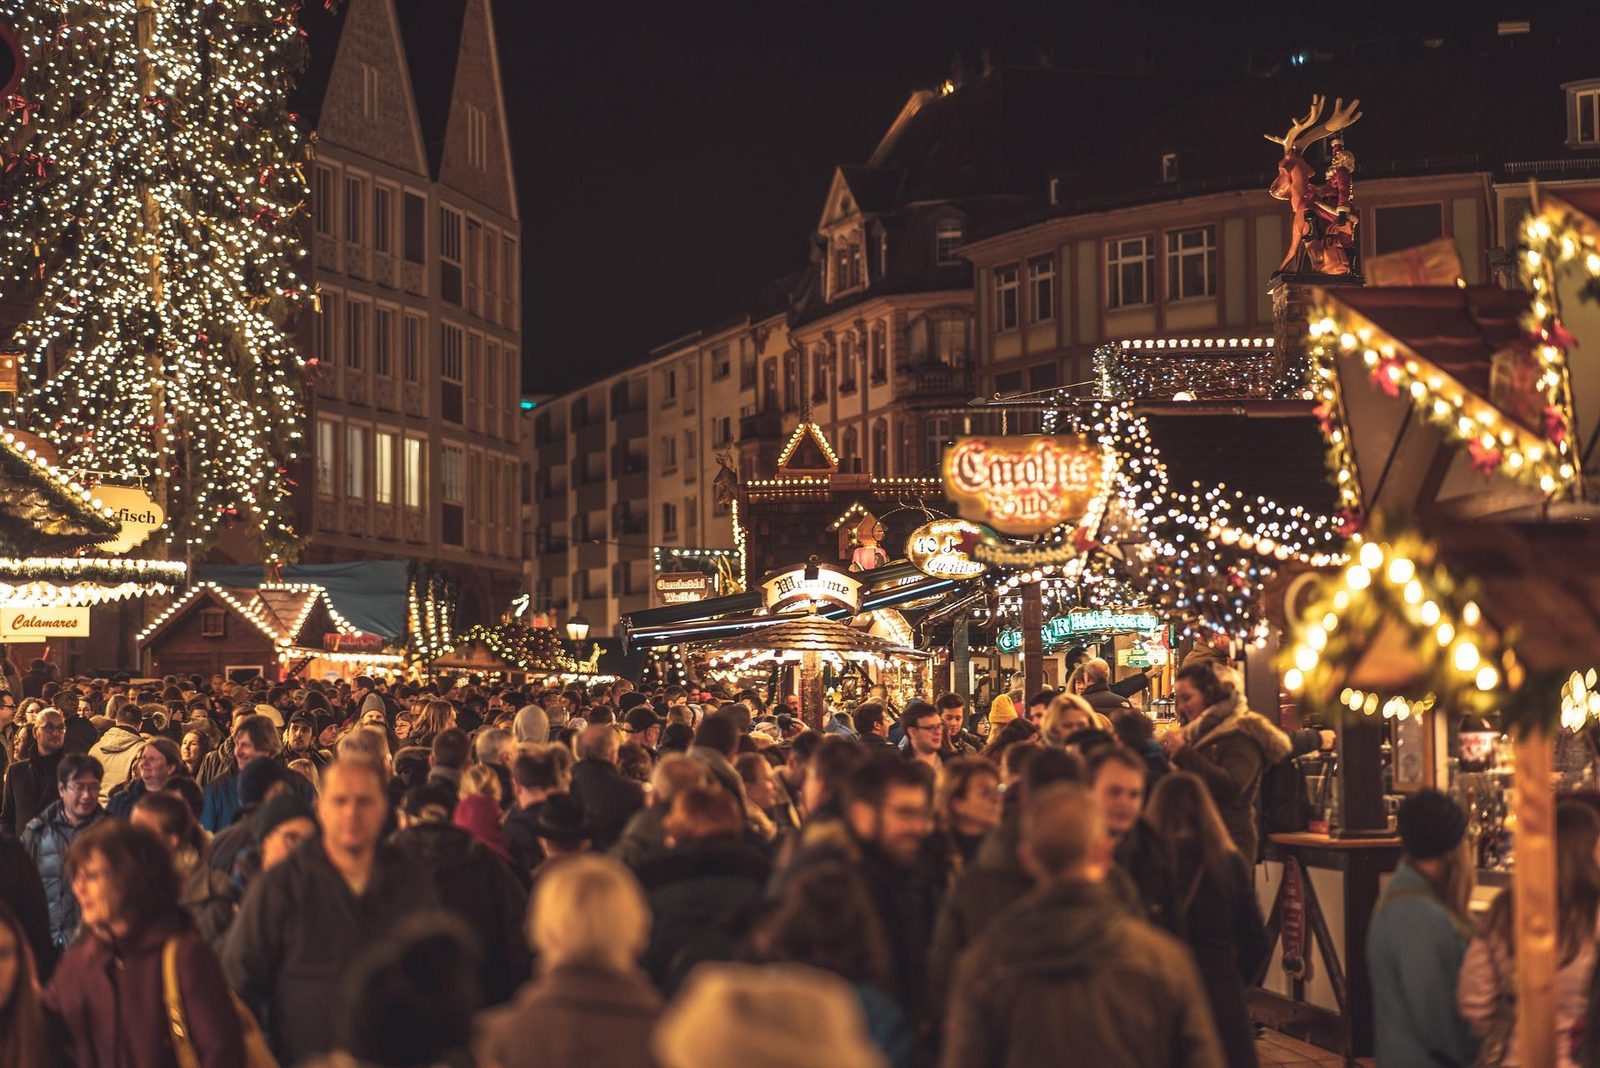 Visit the Christmas market in Egmond aan Zee 